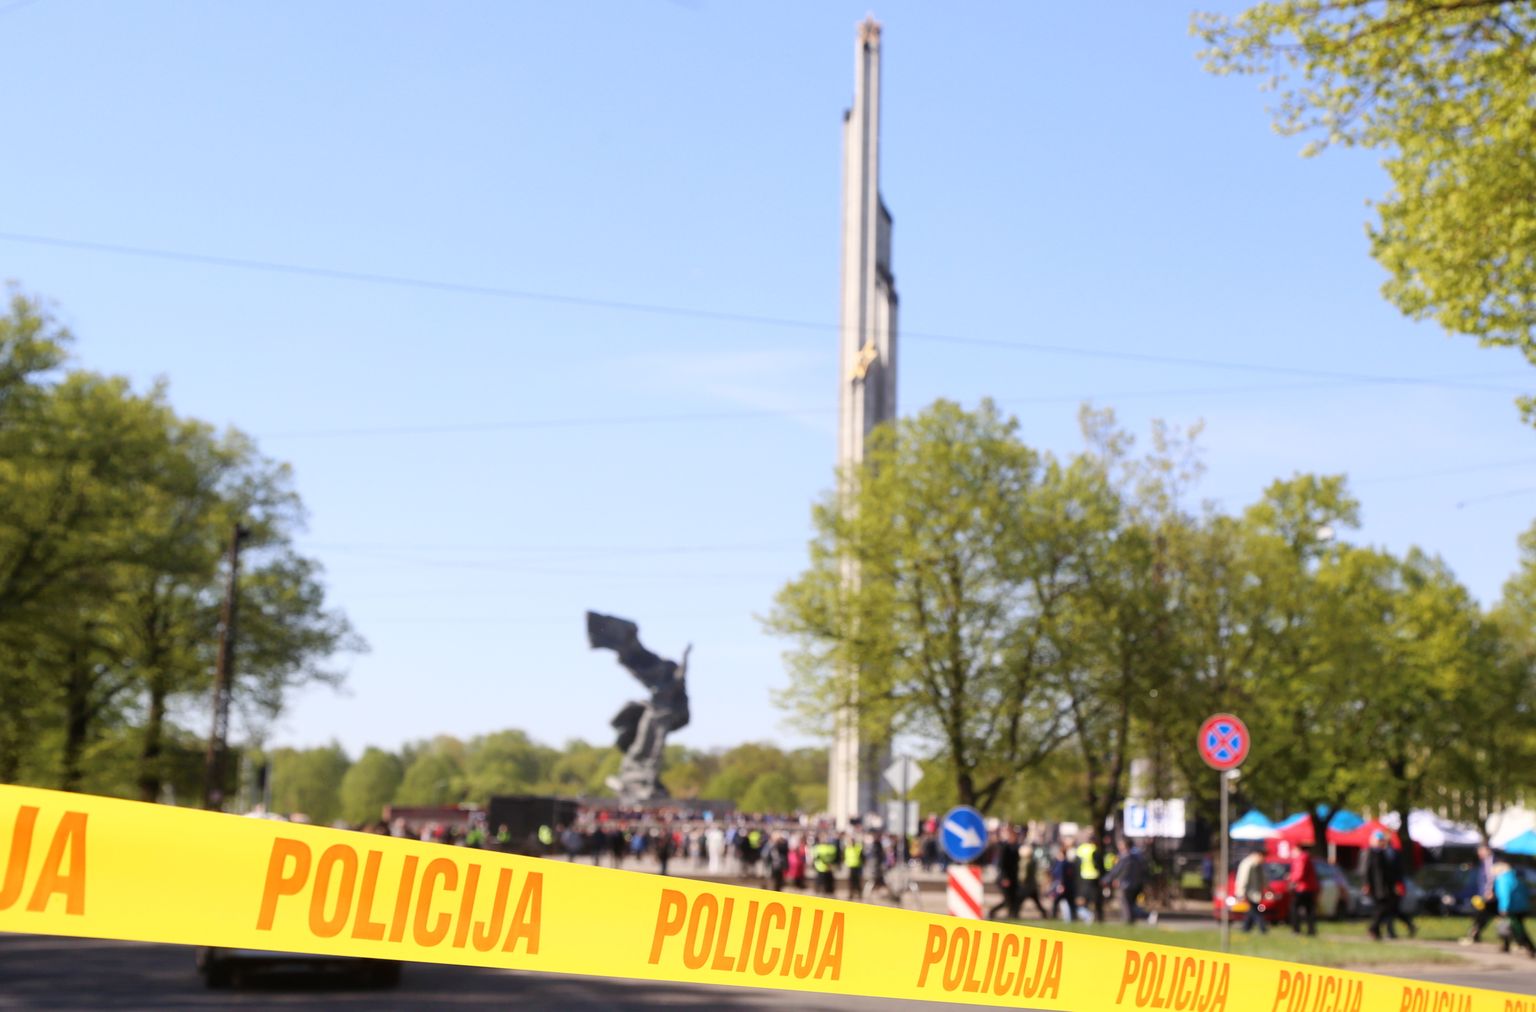 Памятник в парке Победы.